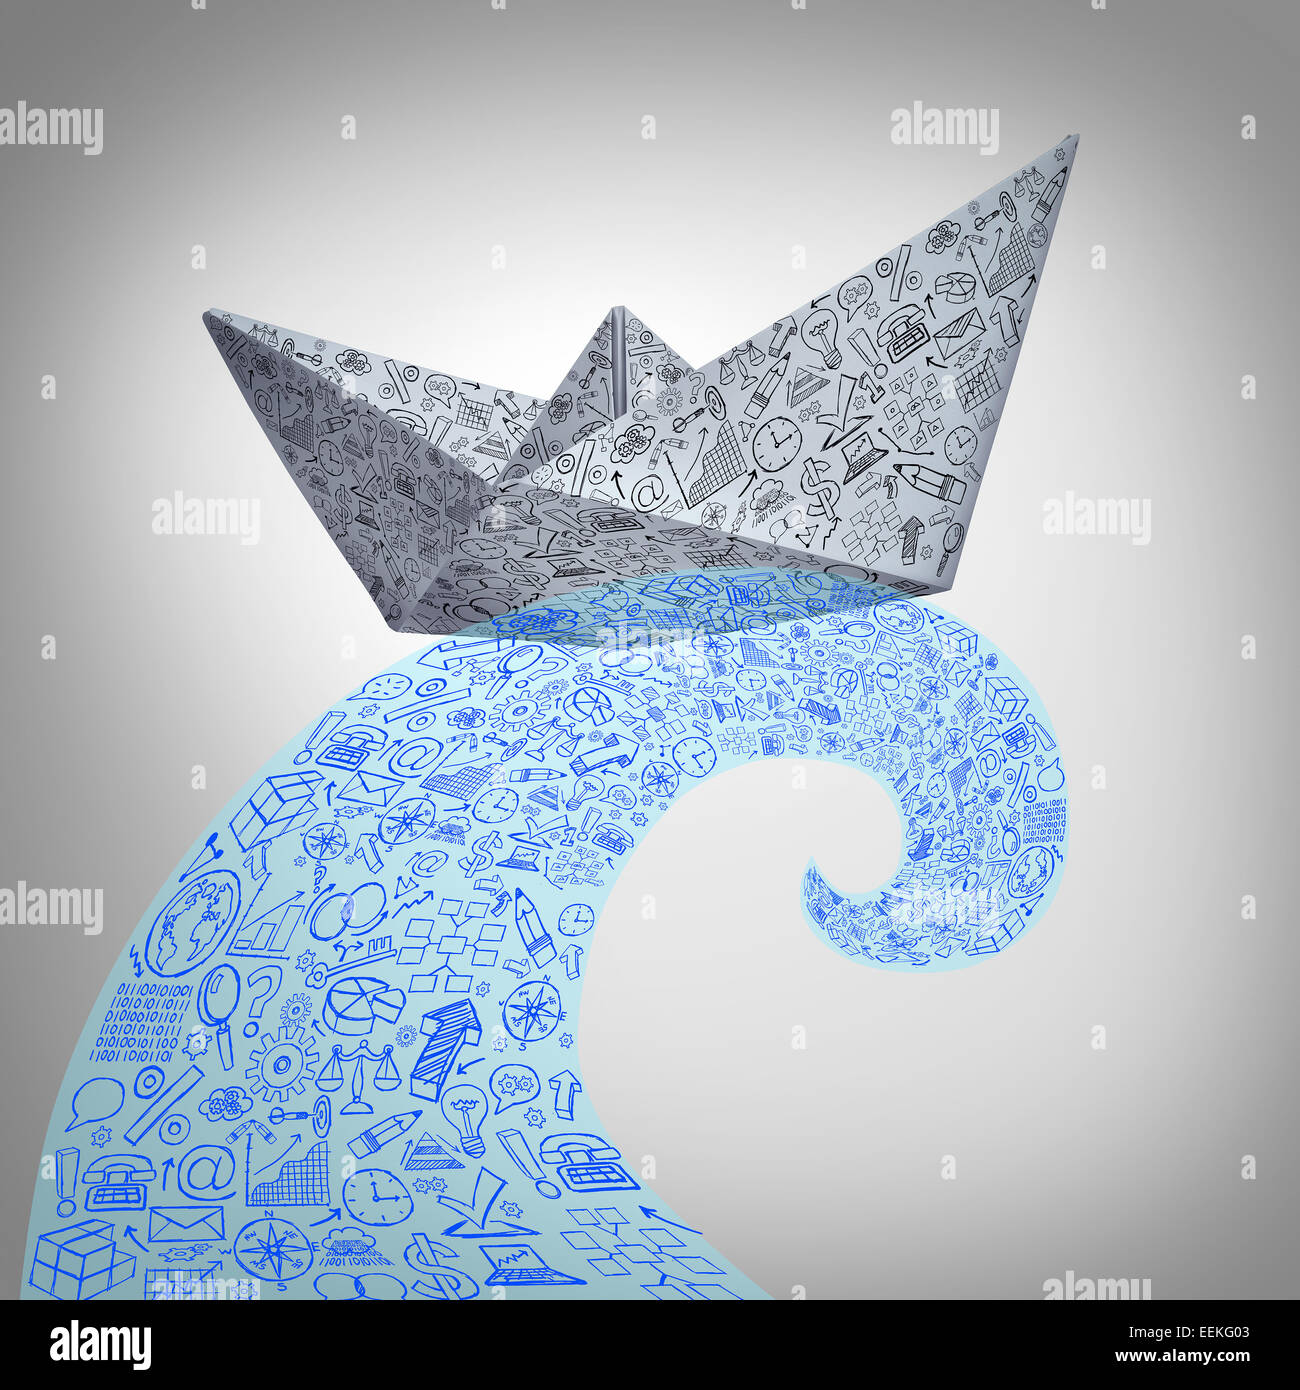 Papier-Boot-Business-Konzept auf eine riesige Flutwelle als Finanzmanagement Symbol mit einem Origami Schiff aus einem Büro Blatt mit Icons auf der Oberfläche hergestellt. Stockfoto